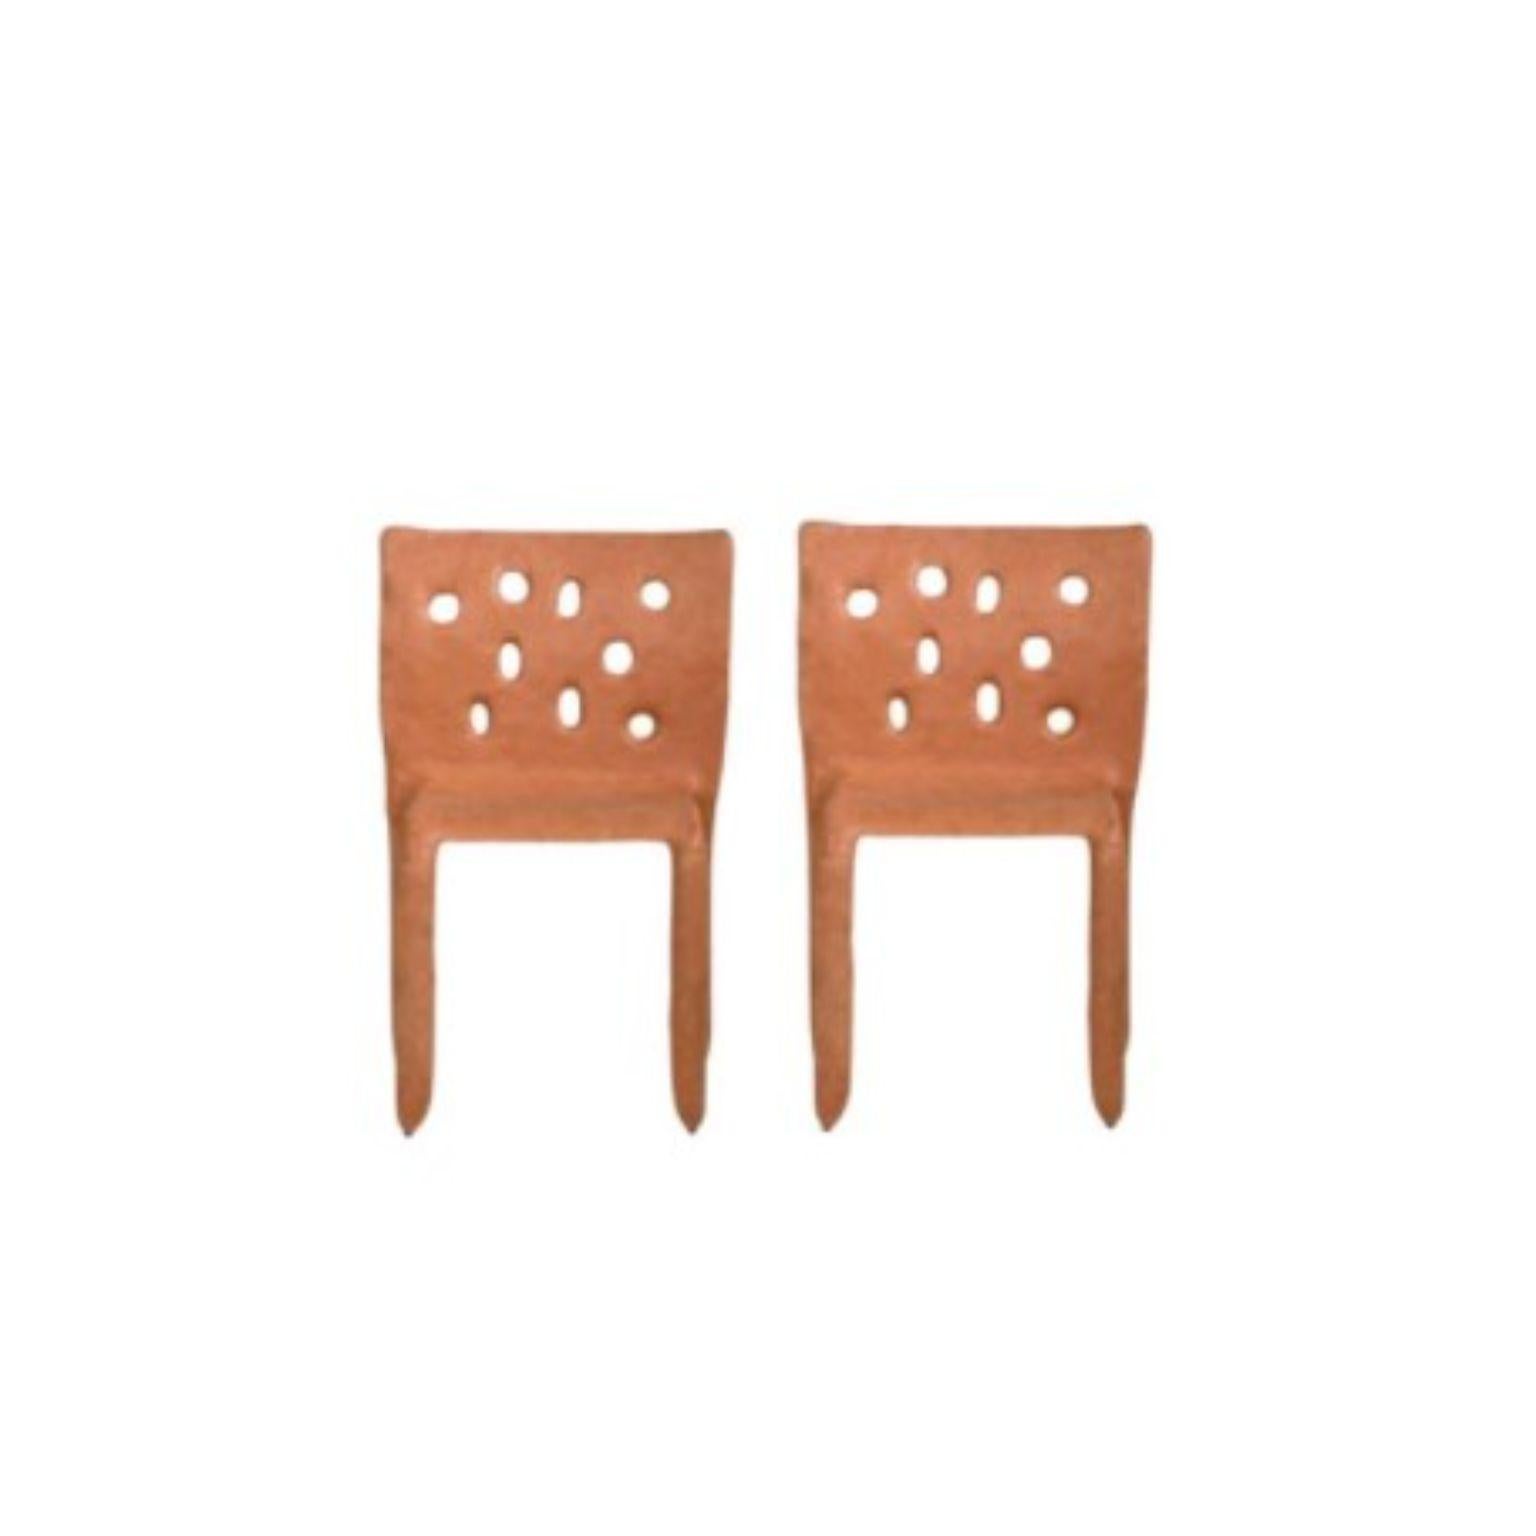 Lot de 2 chaises contemporaines sculptées orange par Faina
Design : Victoriya Yakusha
Matériau : acier, caoutchouc de lin, biopolymère, cellulose
Dimensions : Hauteur 82 x largeur 54 x profondeur des pieds 45 cm
Poids : 15 kilos.

Finition